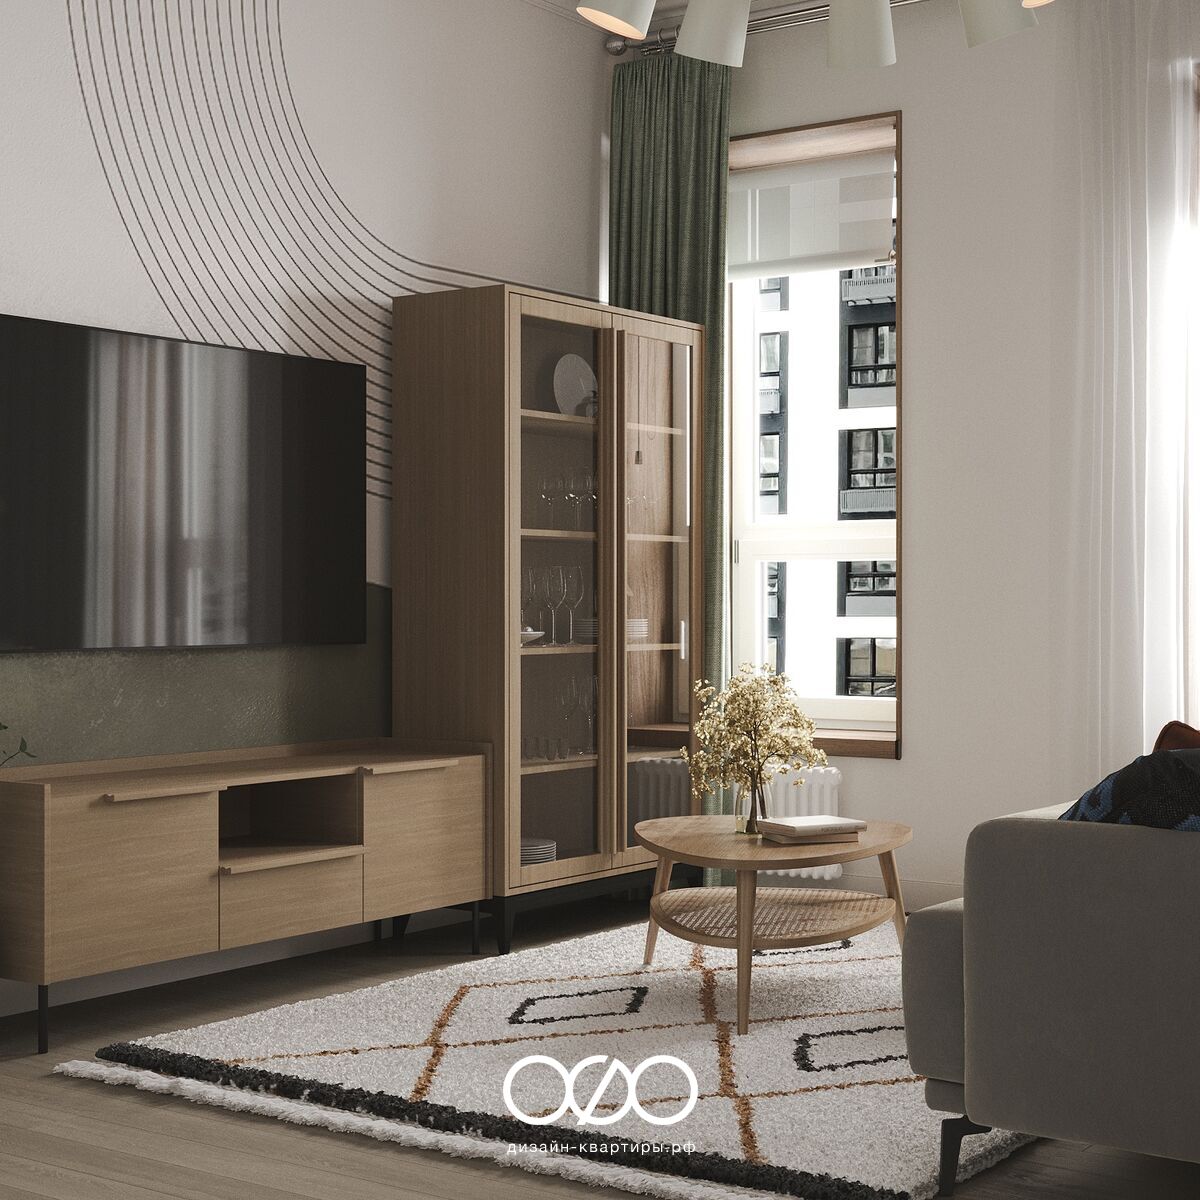 Дизайн гостиной с телевизором